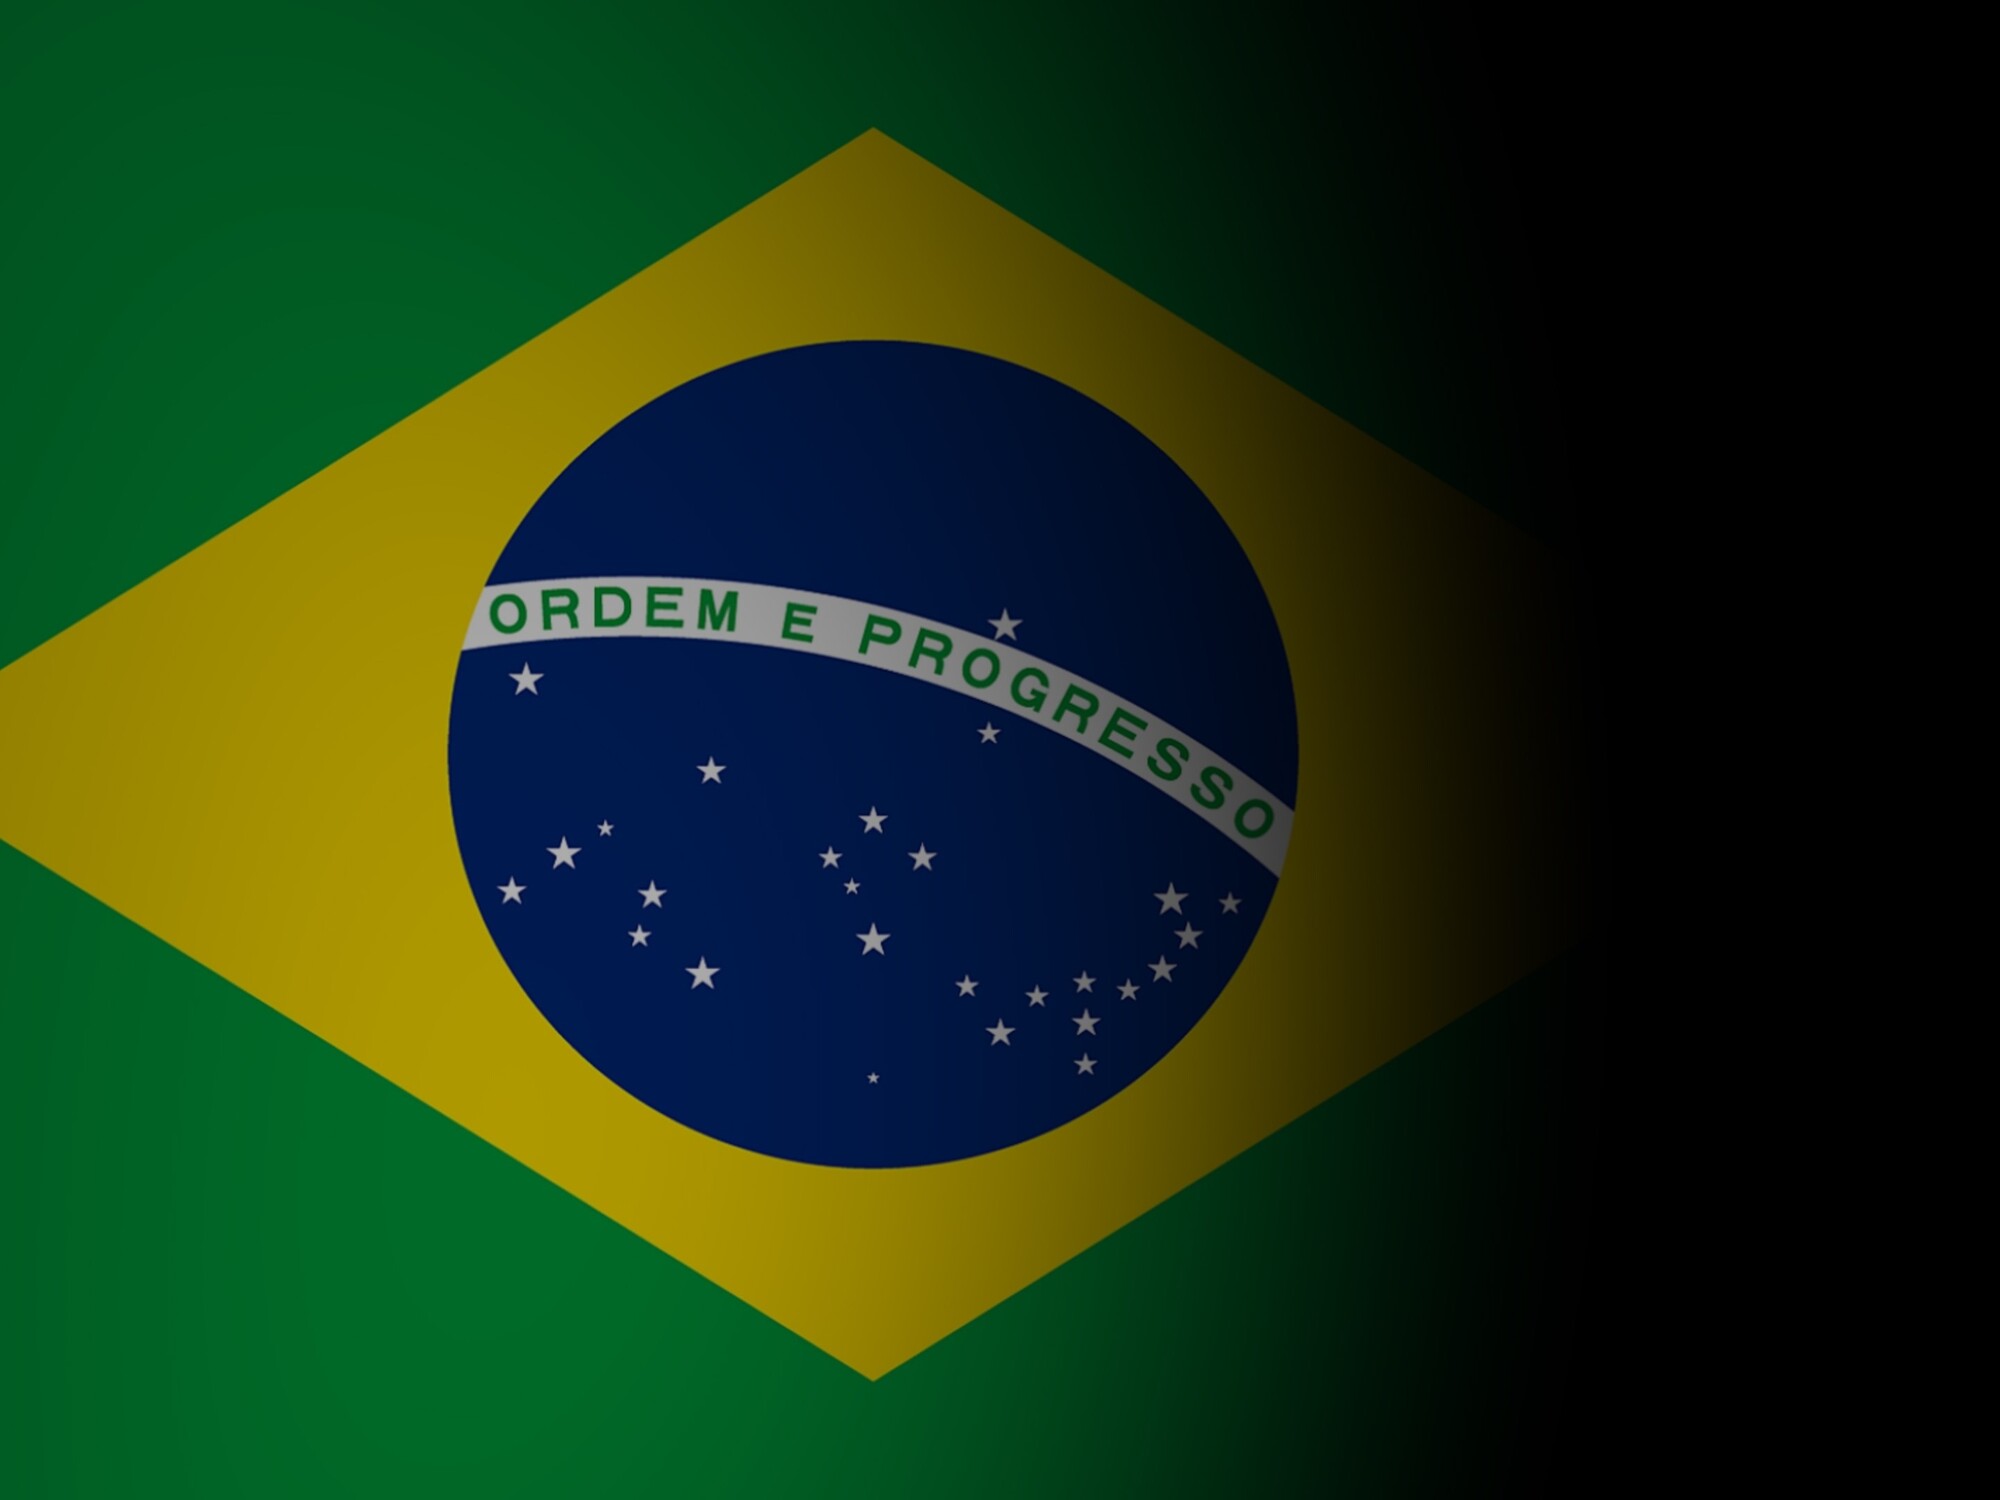 Un jeu vidéo de simulation d'esclavage fait scandale au Brésil ! Google prend une décision radicale